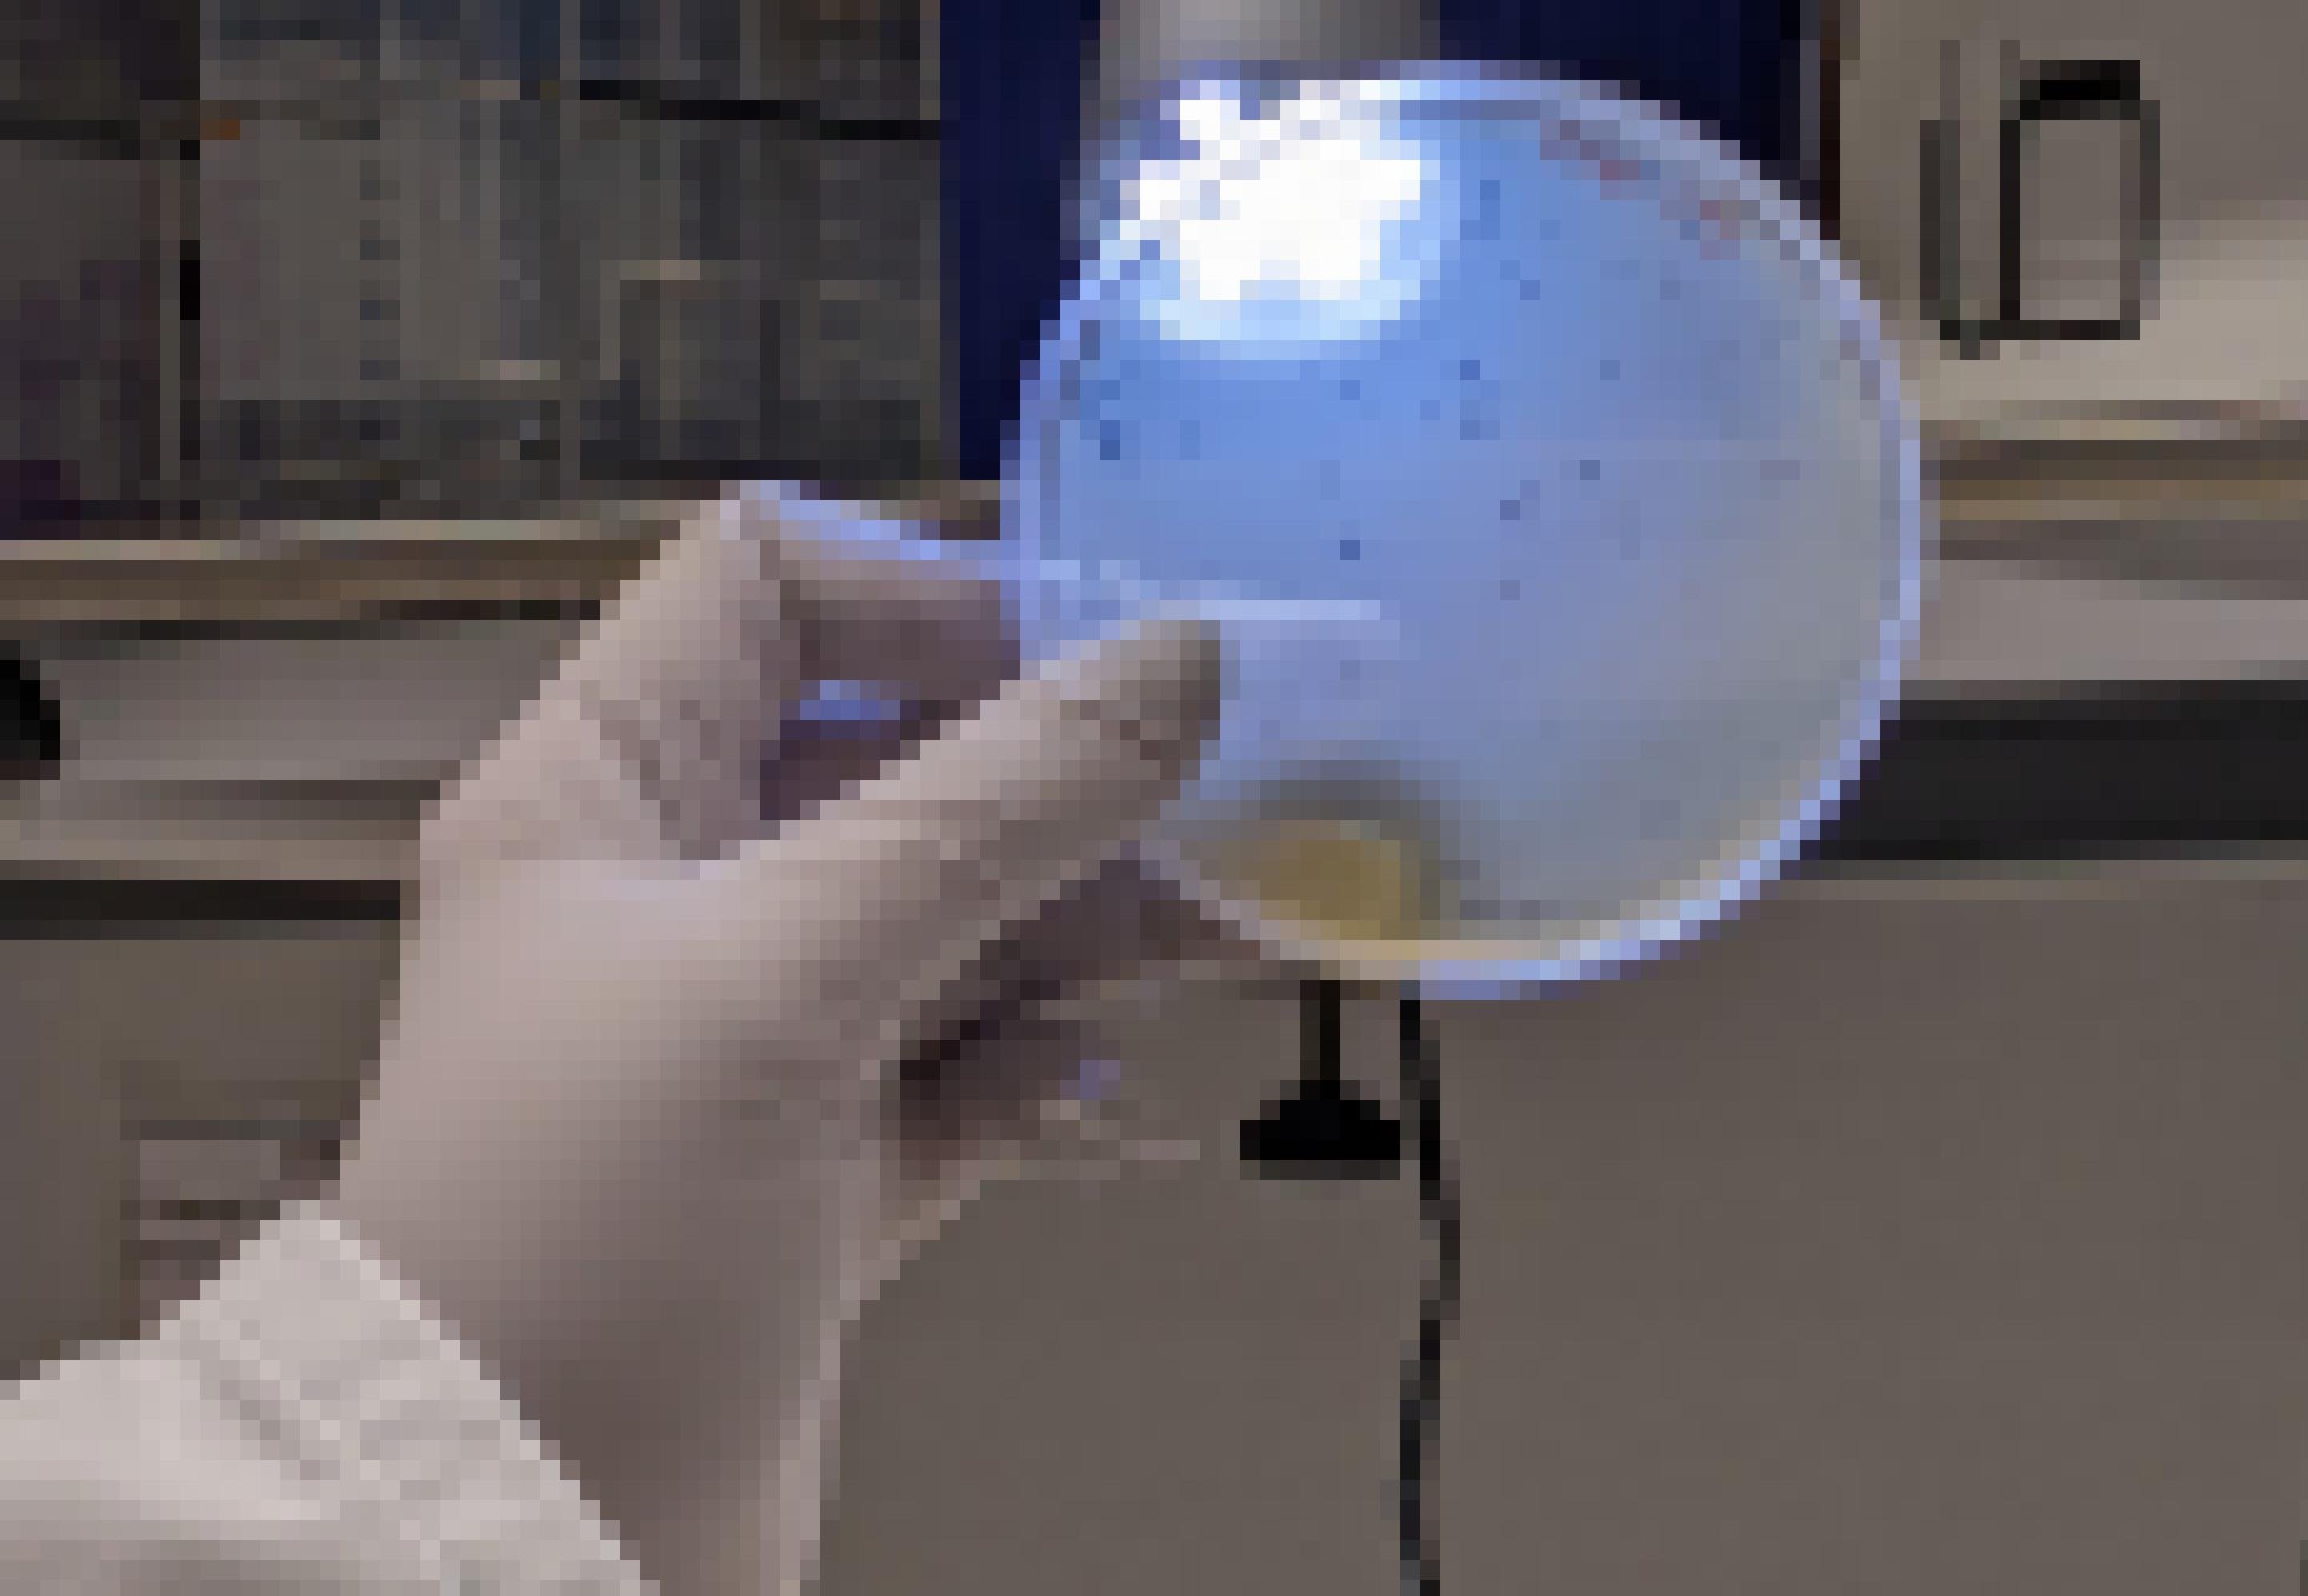 Eine Hand in einem weißen Gummihandschuh hält eine Petrischale in die Höhe. In dem weißlichen Inhalt sind viele kleine Punkte erkennbar. weißlichen Inhalt